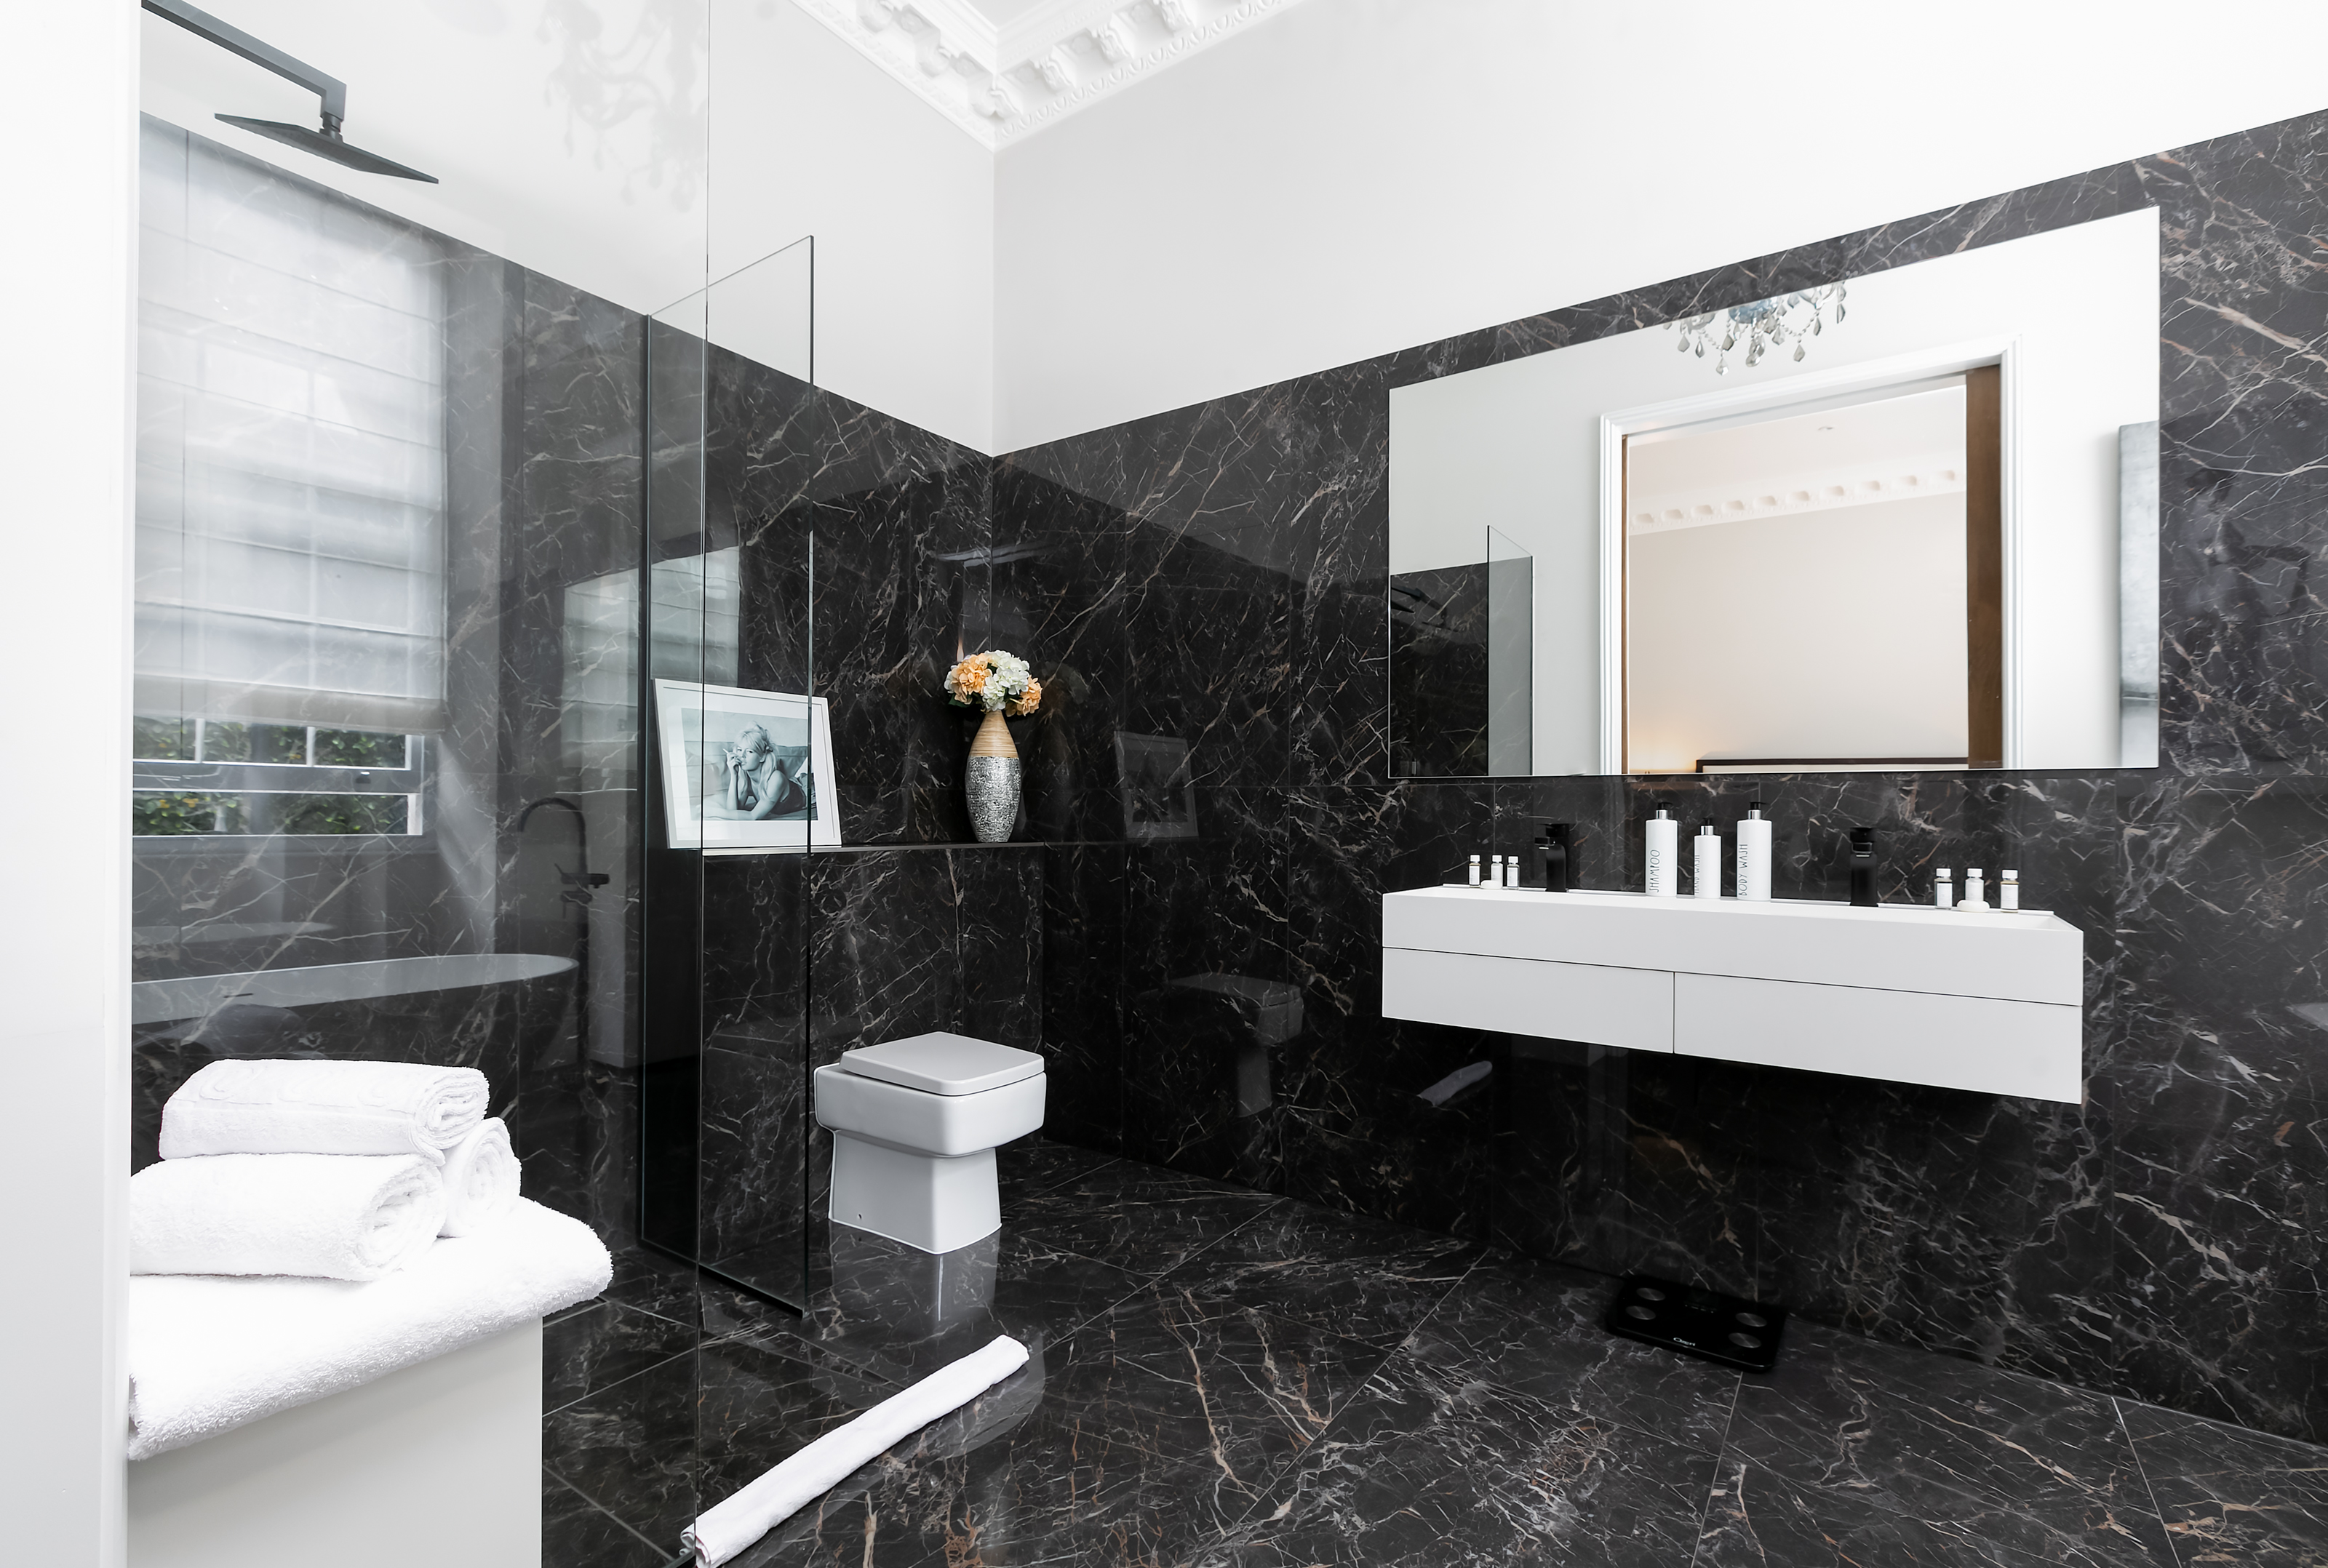 Lovelydays luxury service apartment rental - London - Belgravia - Eccleston House - Owner - 4 bedrooms - 4 bathrooms - Lovely shower - 16c7181de150 - Lovelydays